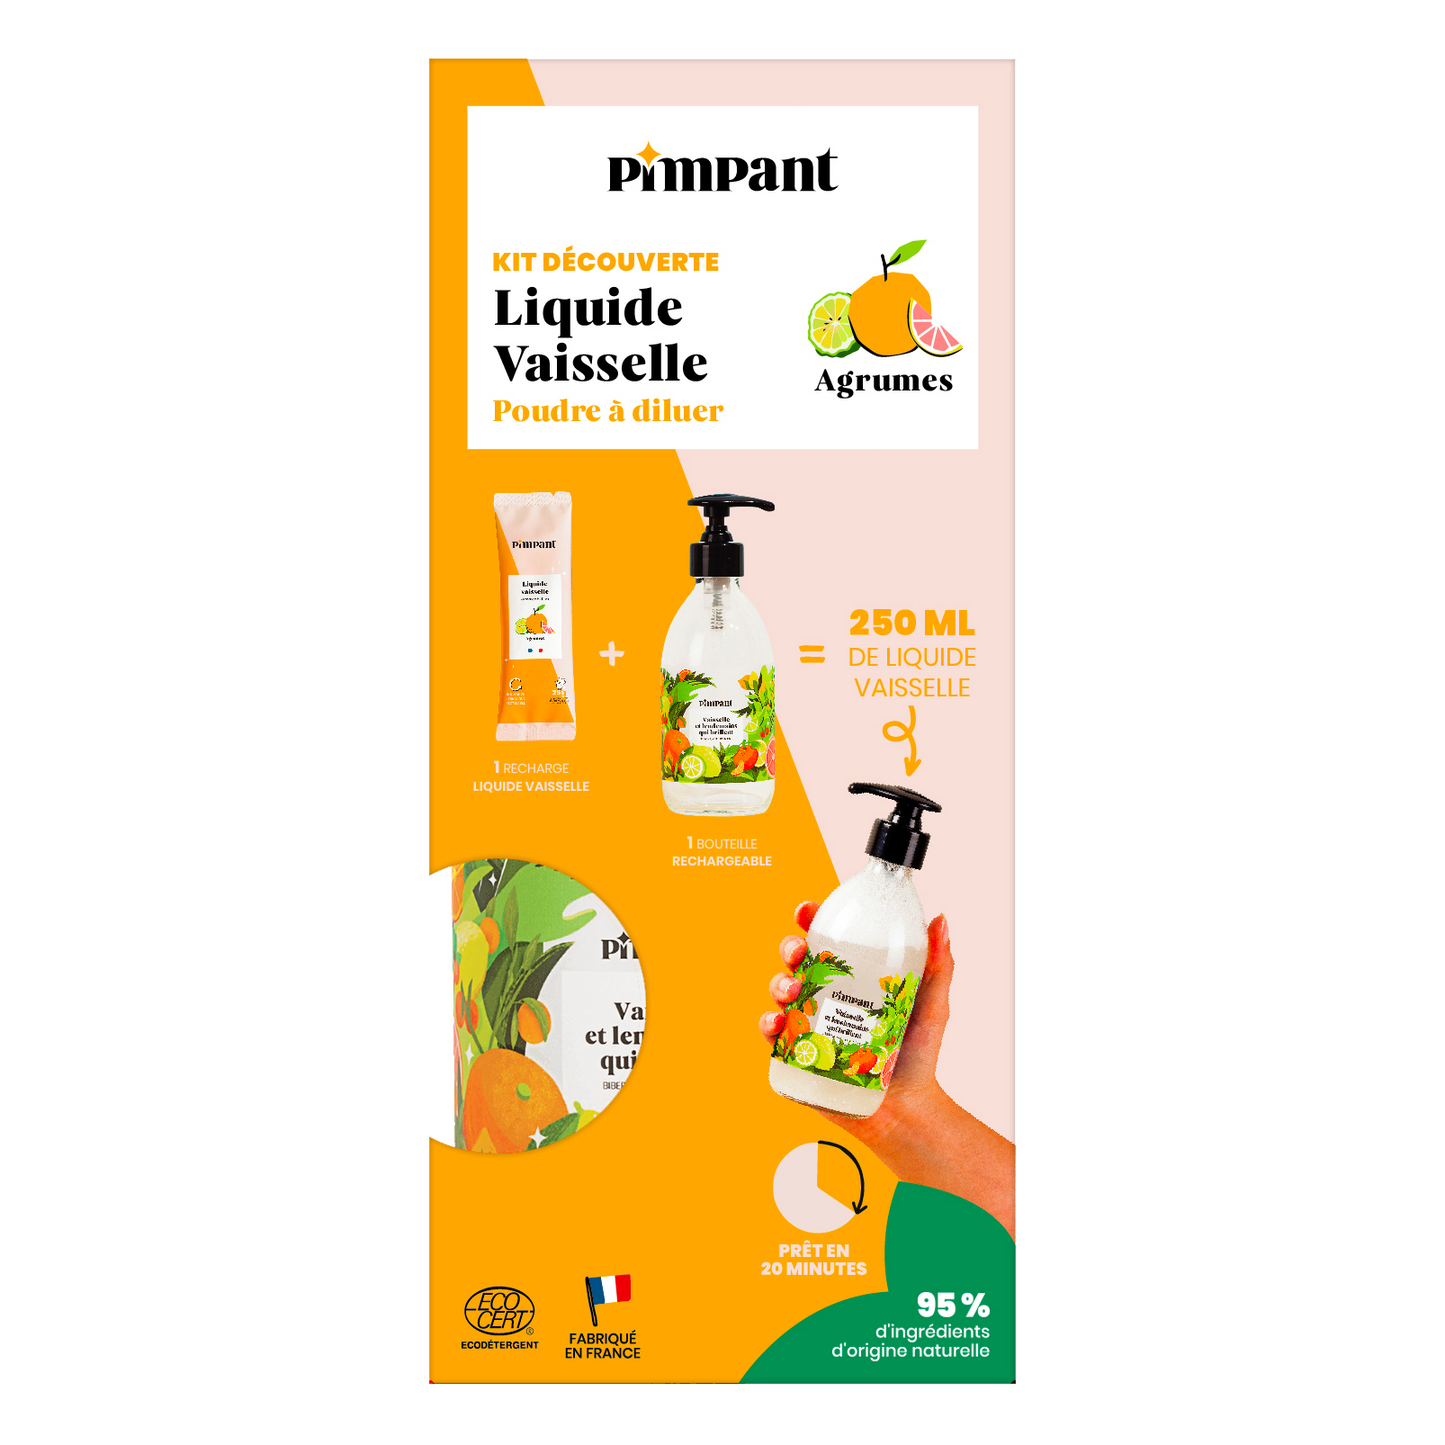 Pimpant -- Kit découverte liquide vaisselle agrumes (1 bouteille + 1 stick) - 250 ml